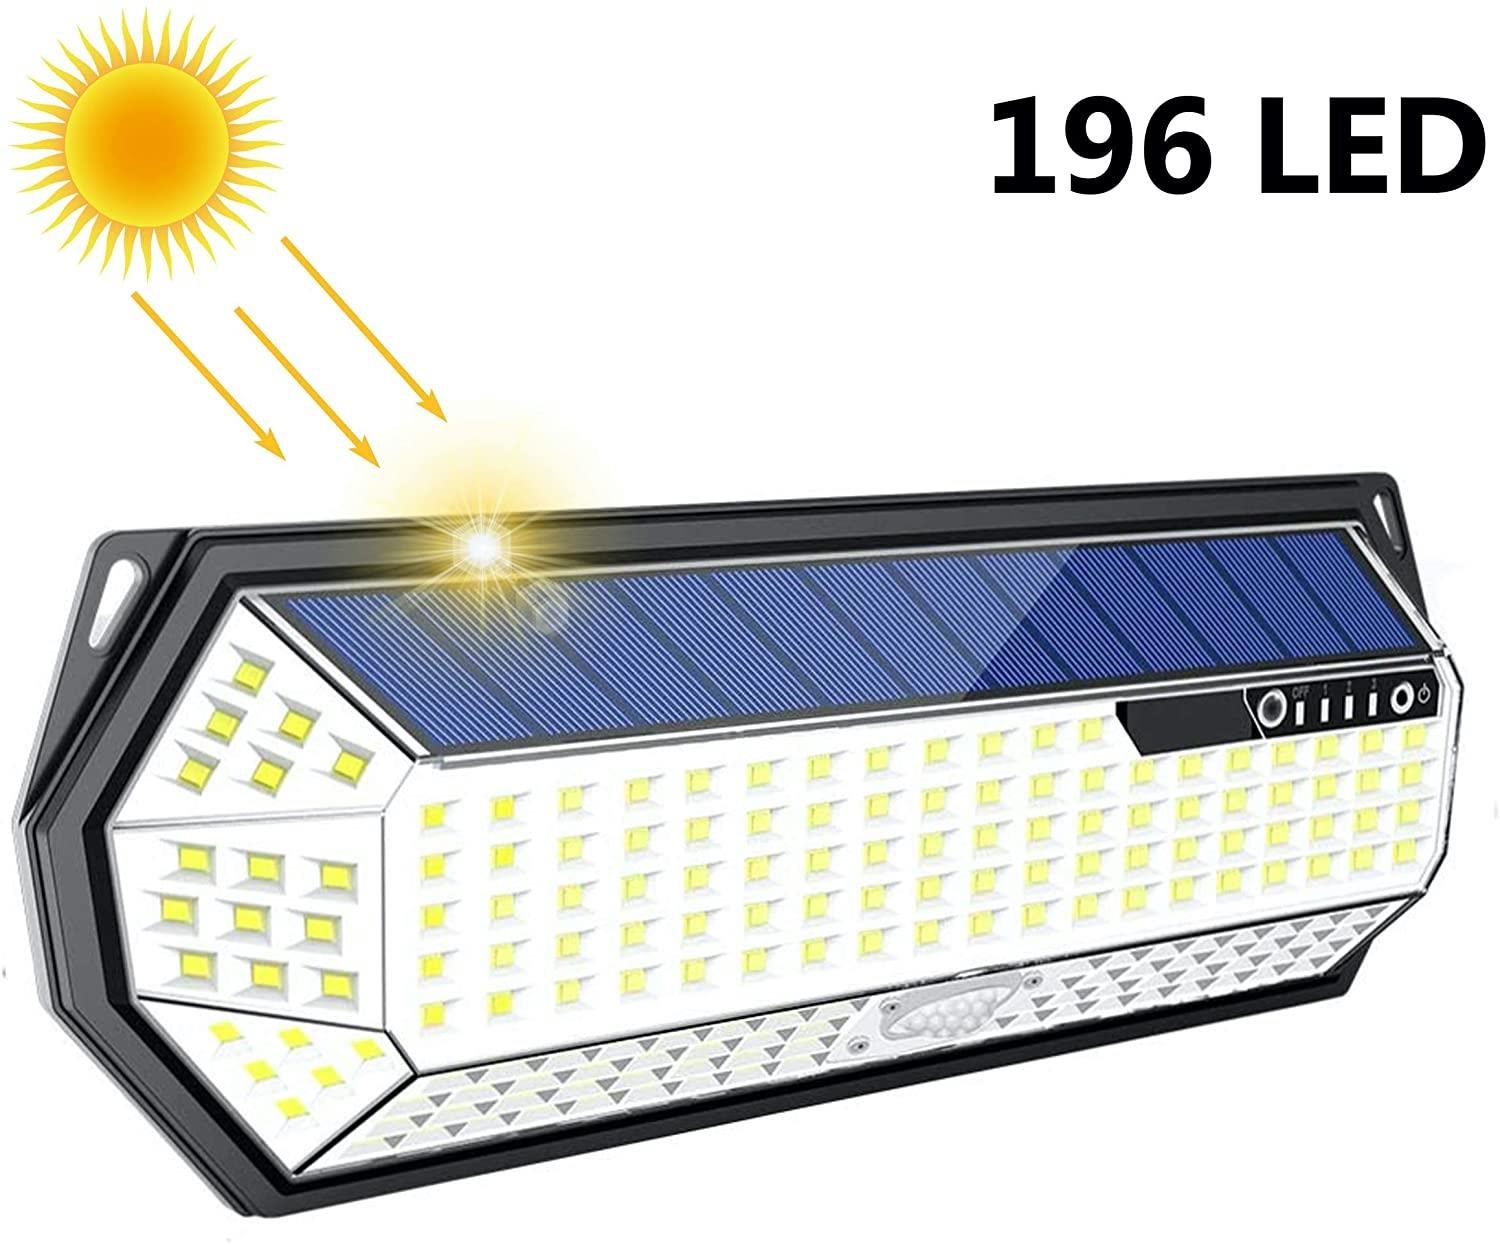 LEDSolar 196 solární venkovní světlo svítidlo, 196 LED se senzorem, bezdrátové, 4W, studenáLEDSolar 196 solárne vonkajšie svetlo svietidlo, 196 LED so senzorom, bezdrôtové, 4 W, studené